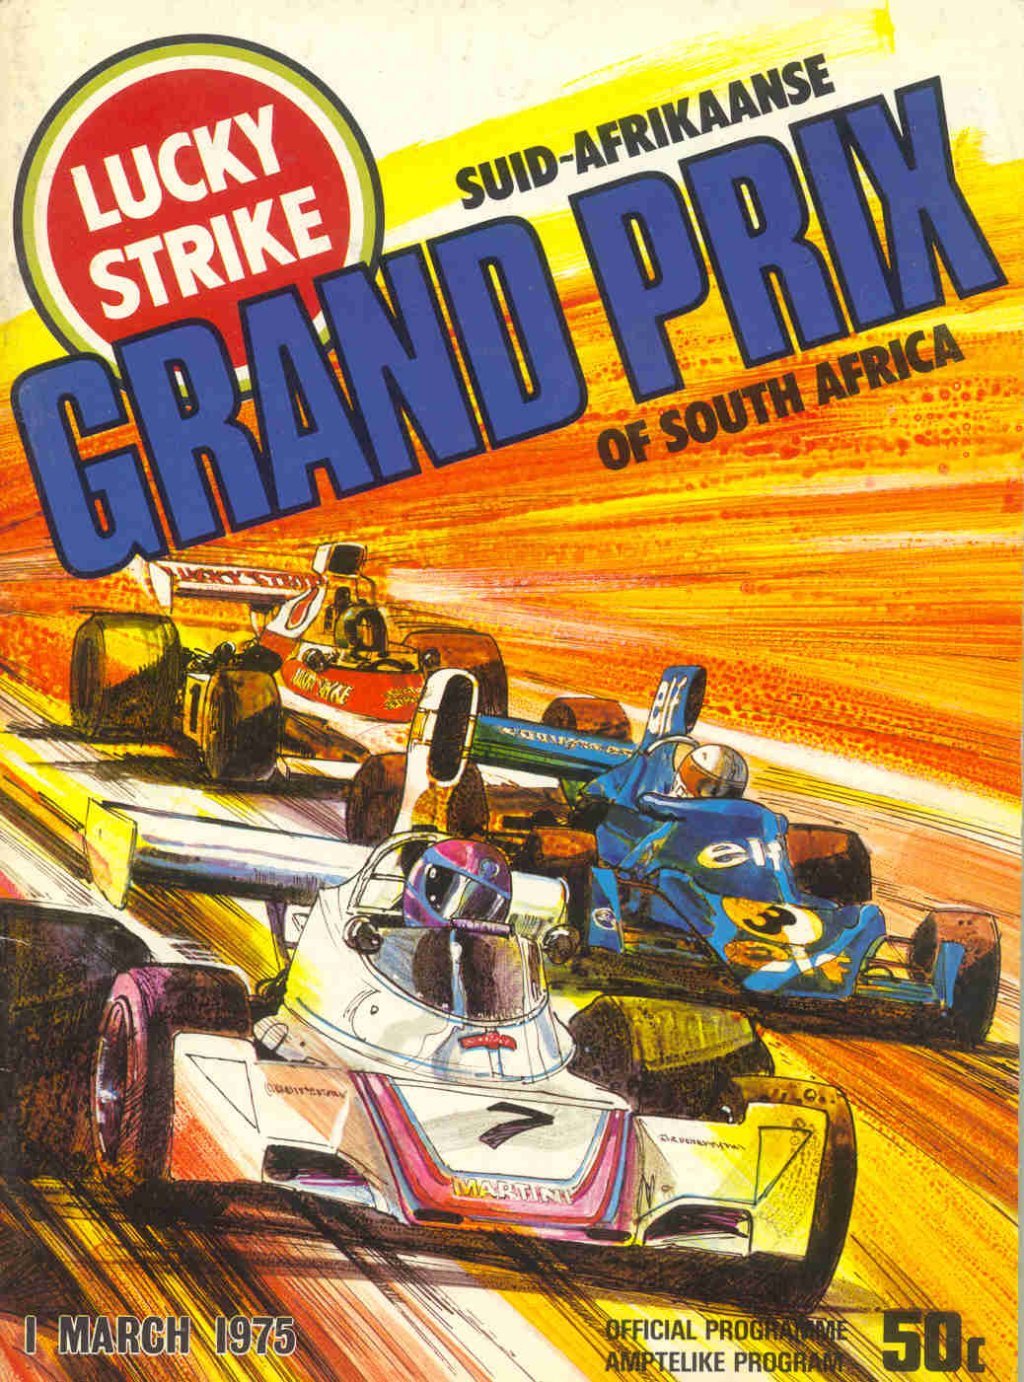 Capa do programa oficial do GP sulafricano de 1975